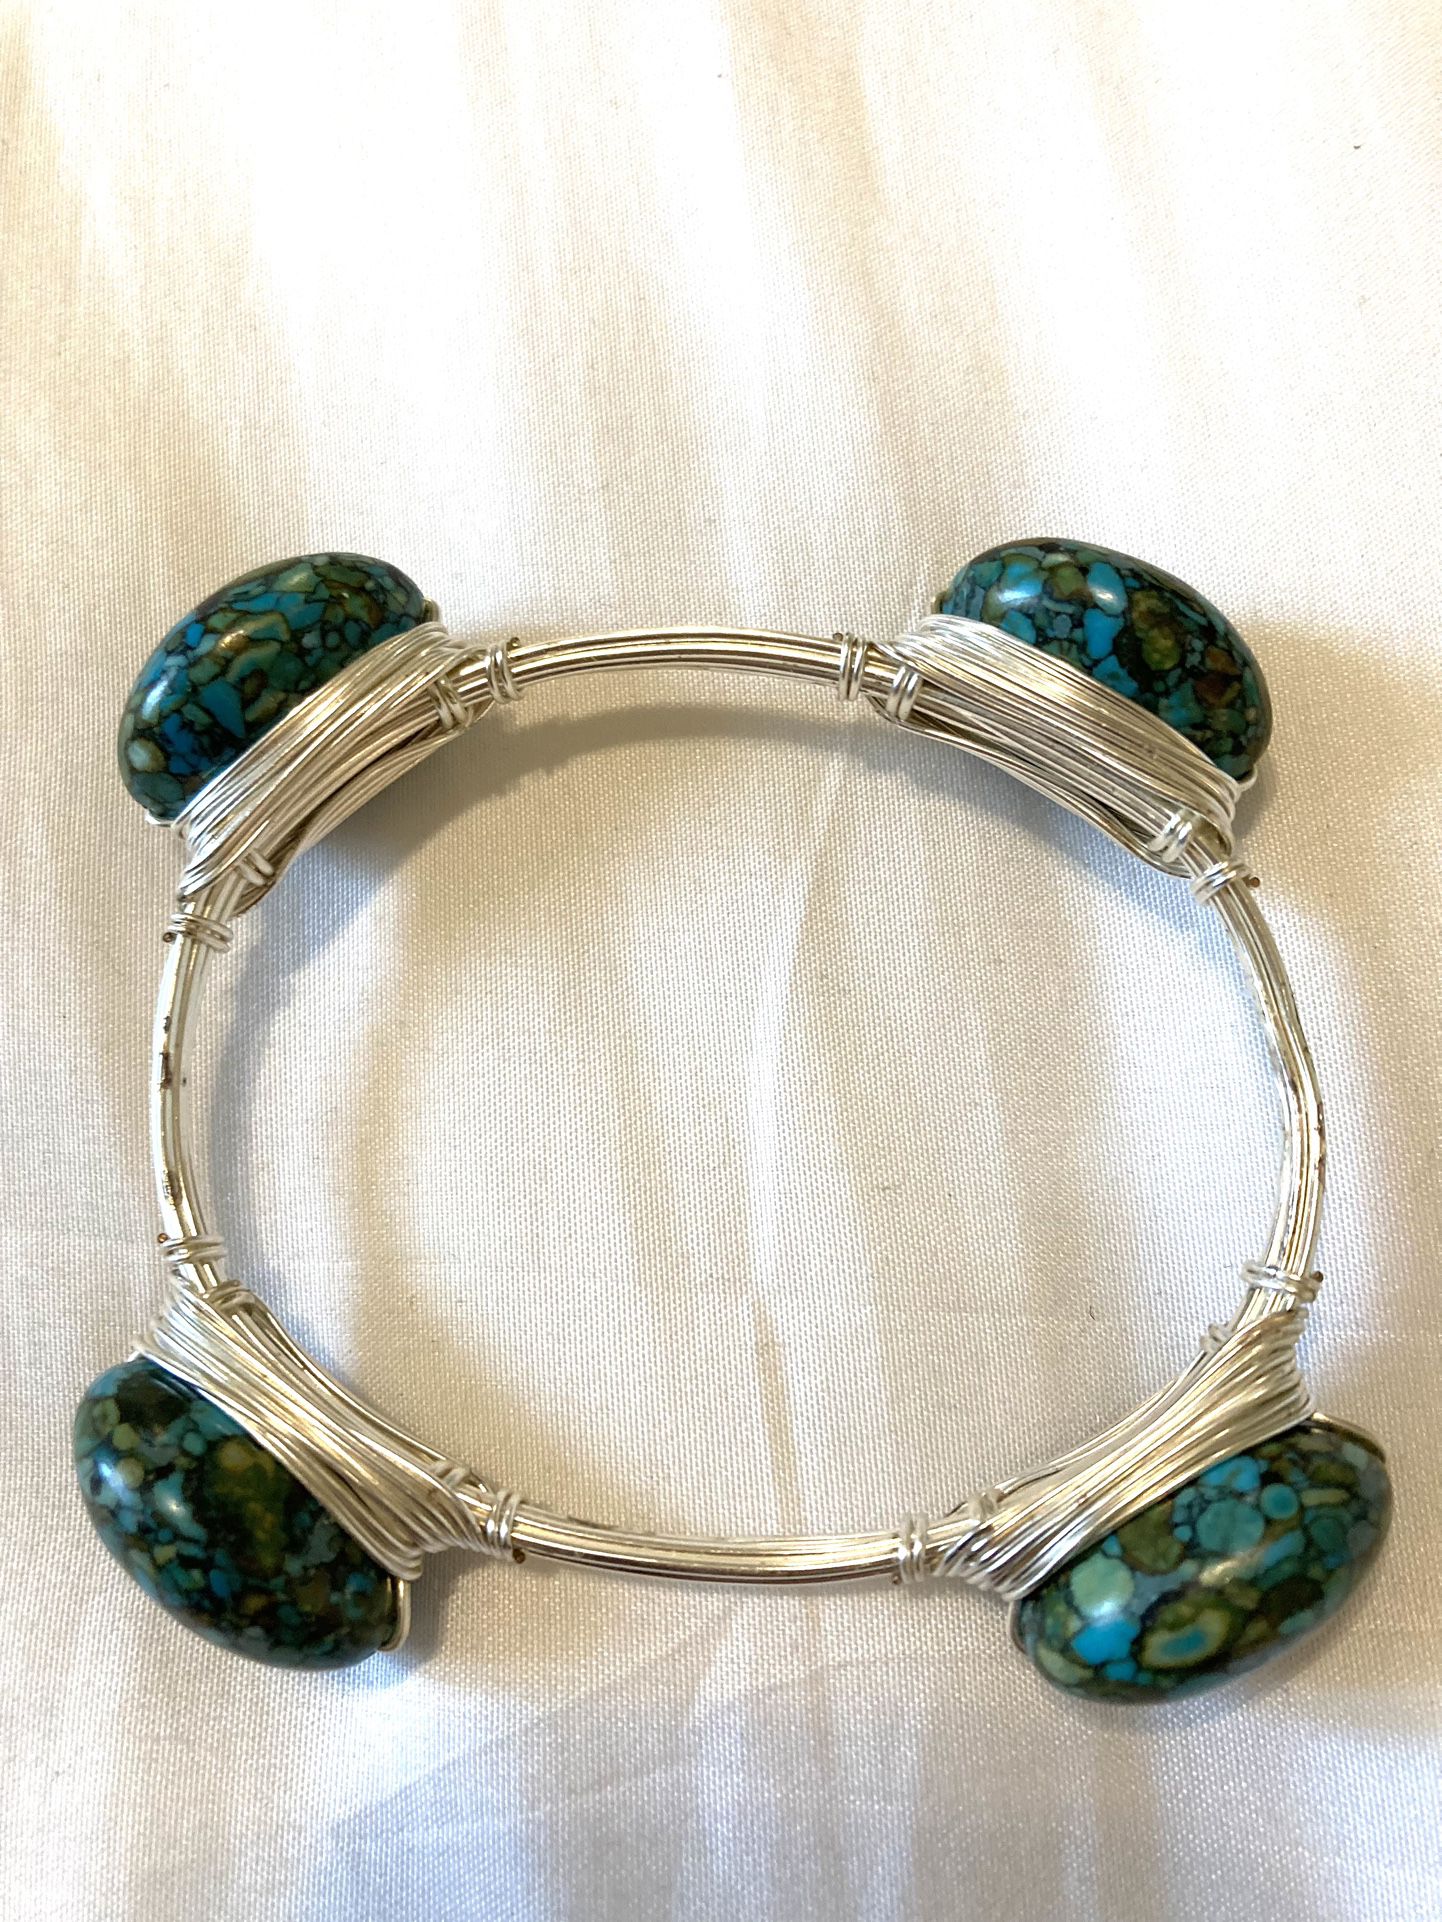   Turquoise, Unique Bracelet